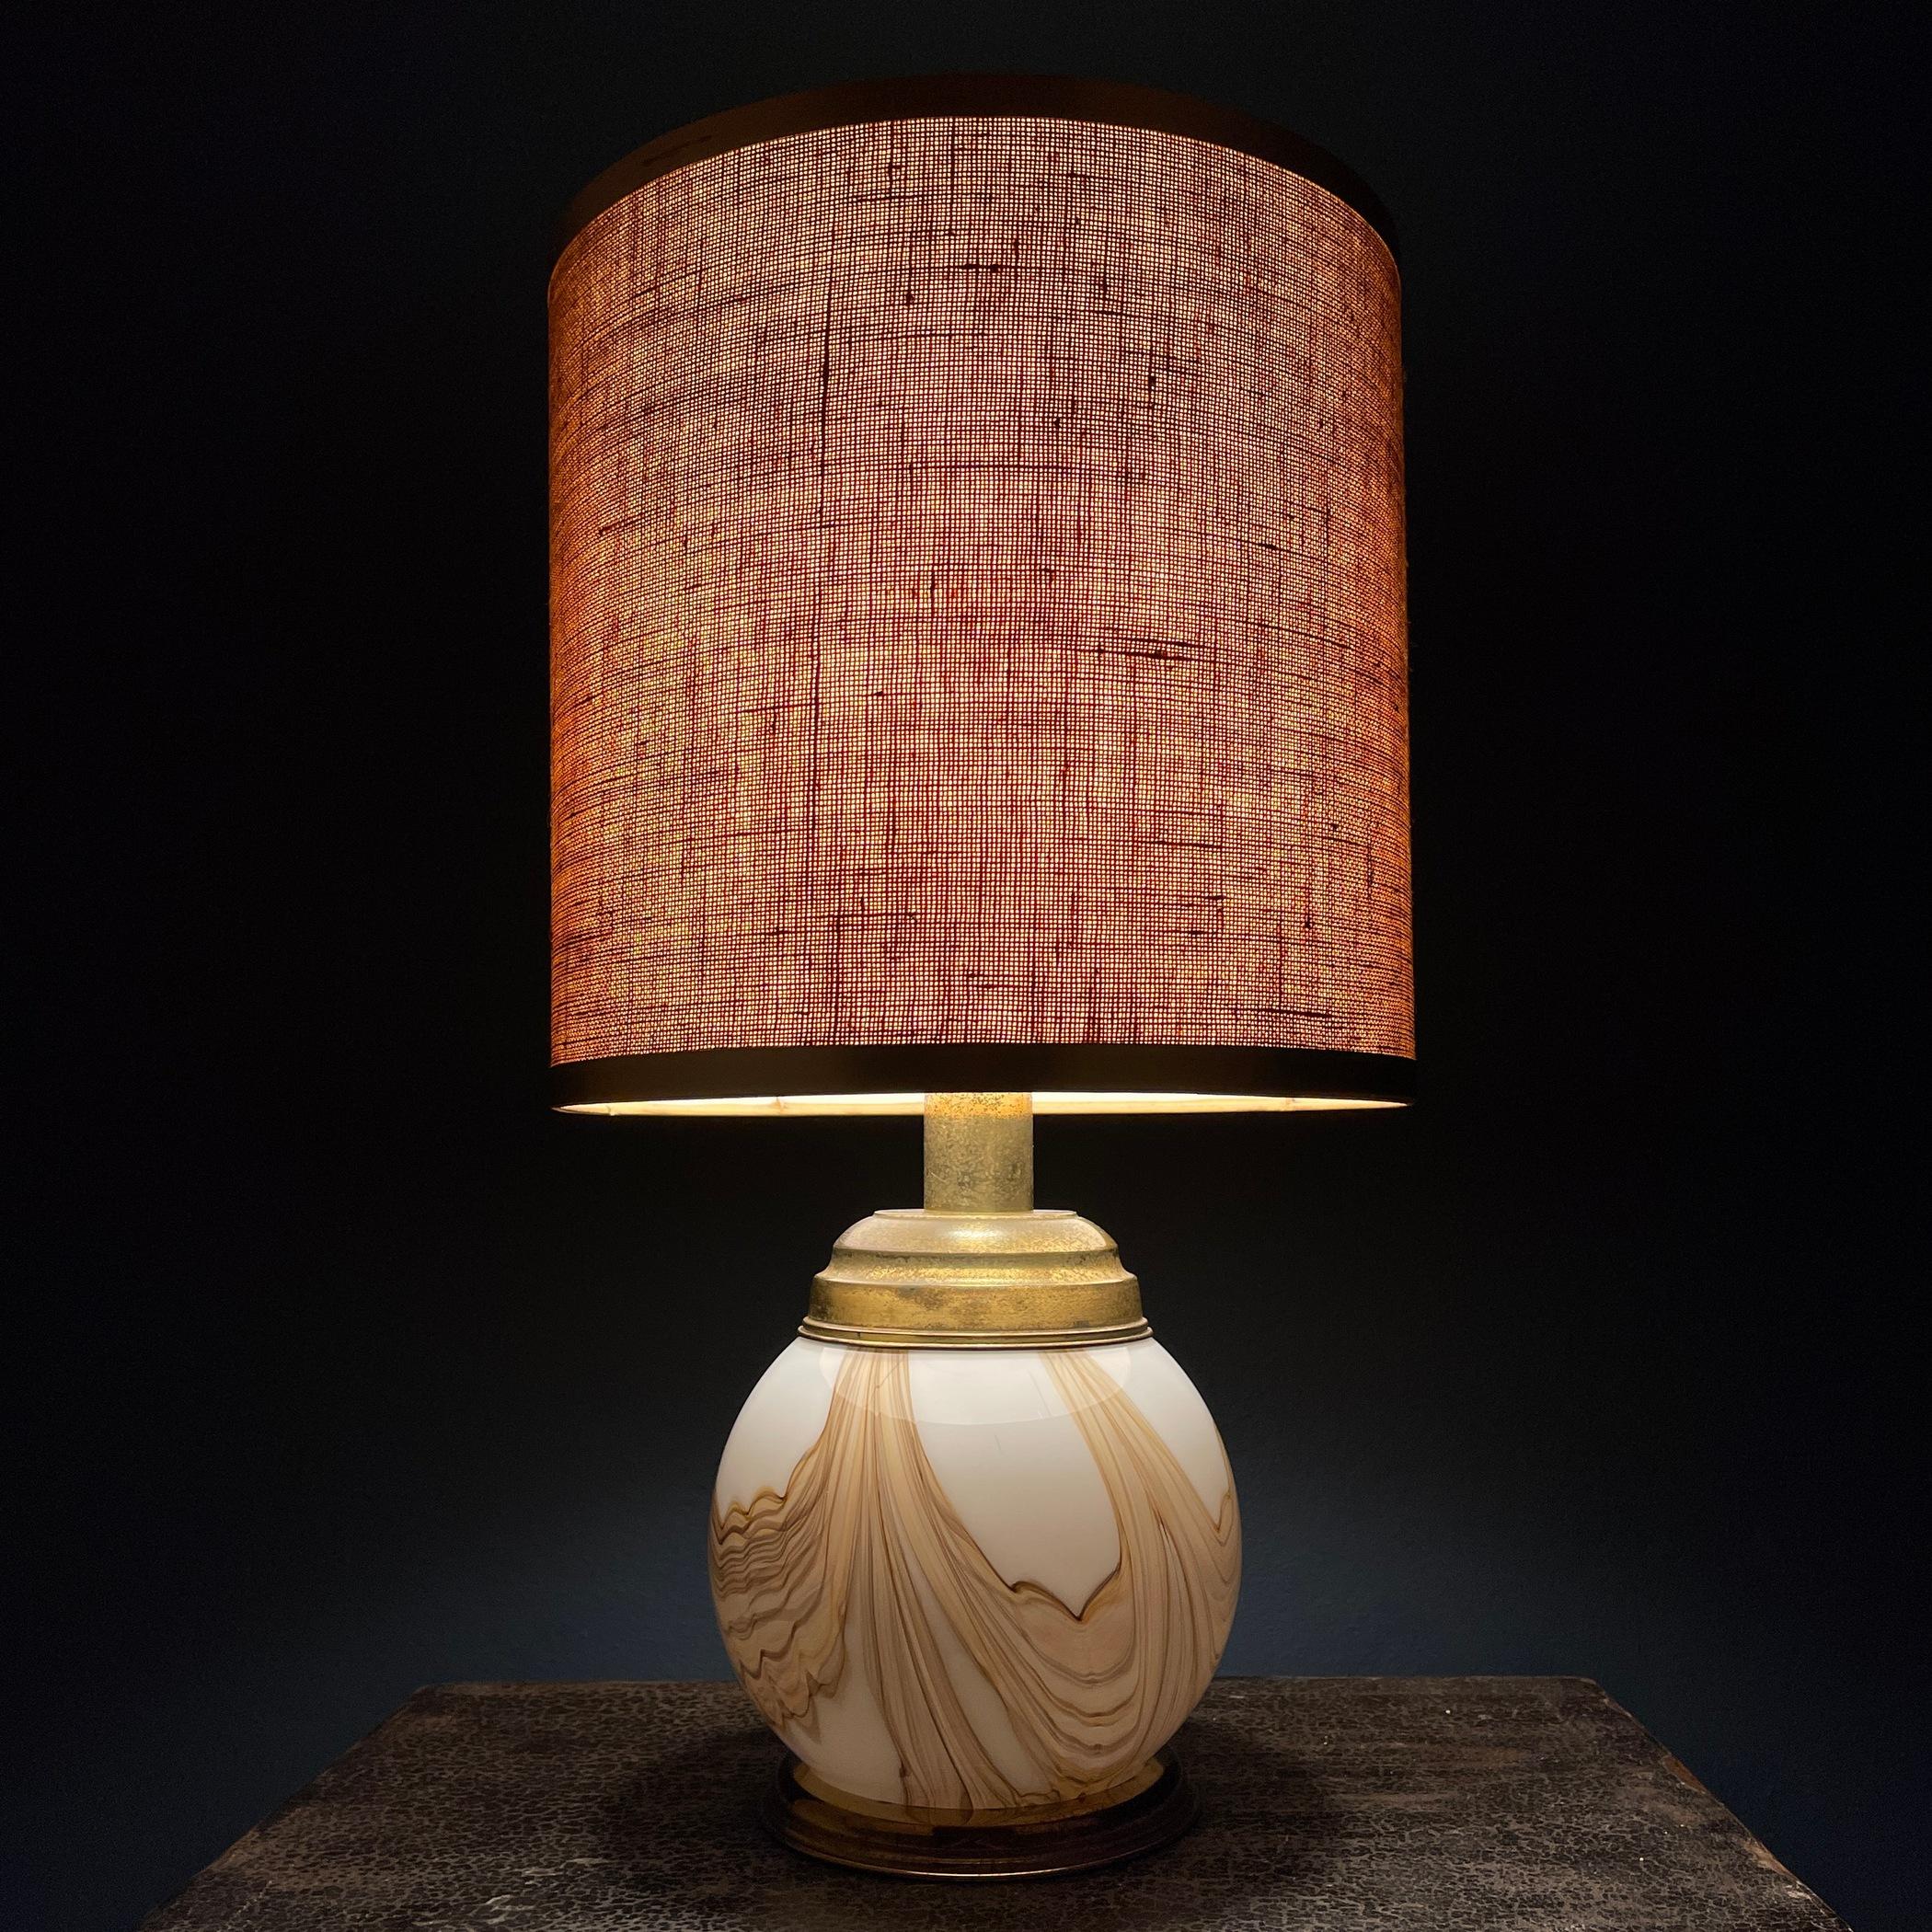 Illustris la lampe classique de Murano, un chef-d'œuvre fabriqué en Italie au cours des illustres années 1970. Cette pièce exquise est ornée d'un design en verre envoûtant, qui témoigne de l'art des verriers de Murano. Émerveillez-vous devant le